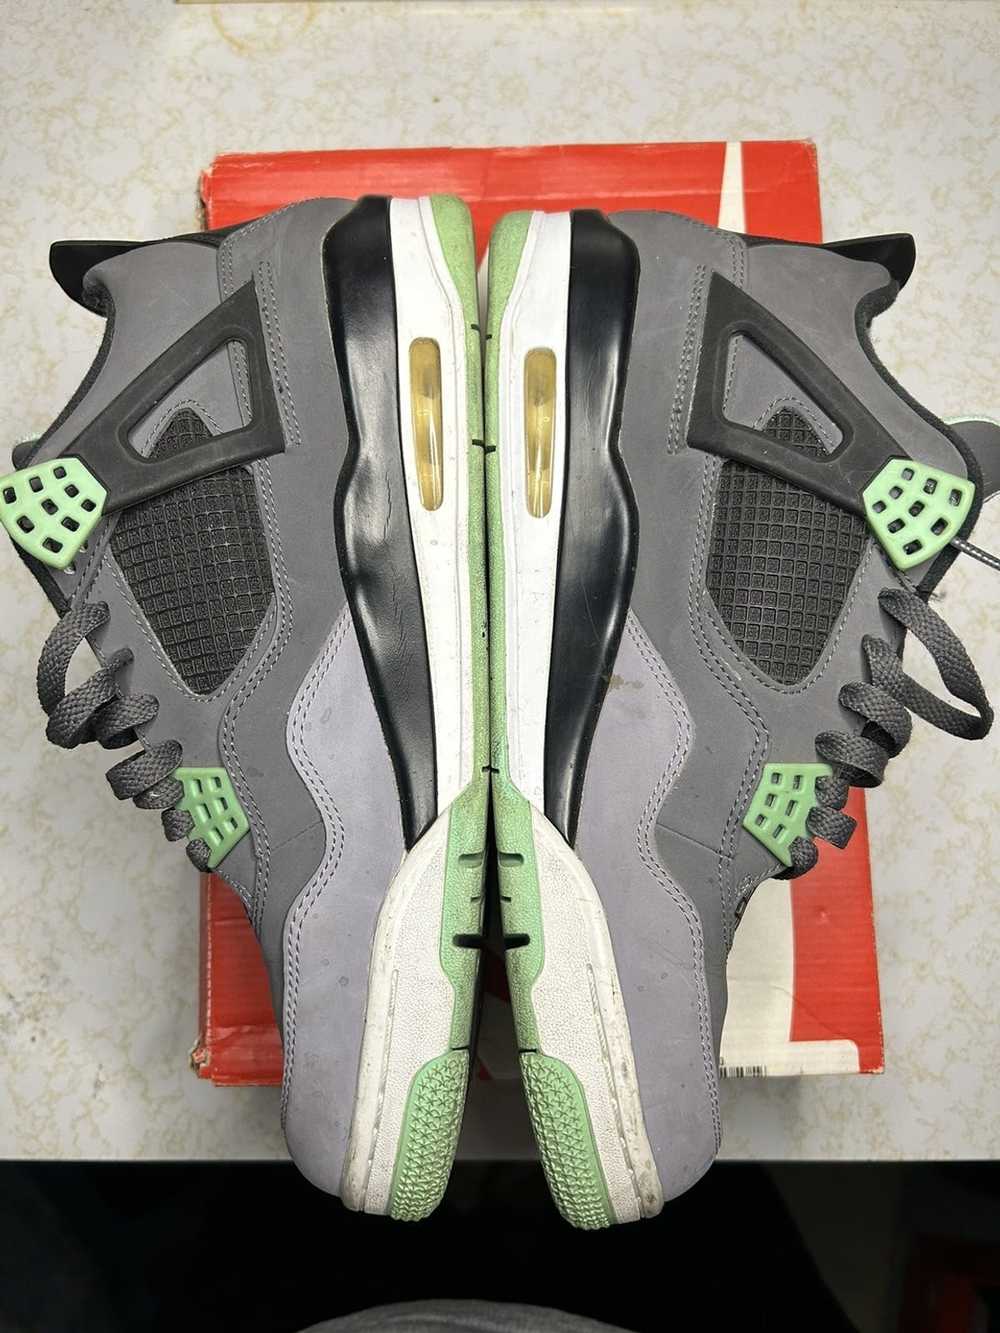 Jordan Brand Jordan Retro 4 ‘green glow’ - image 2